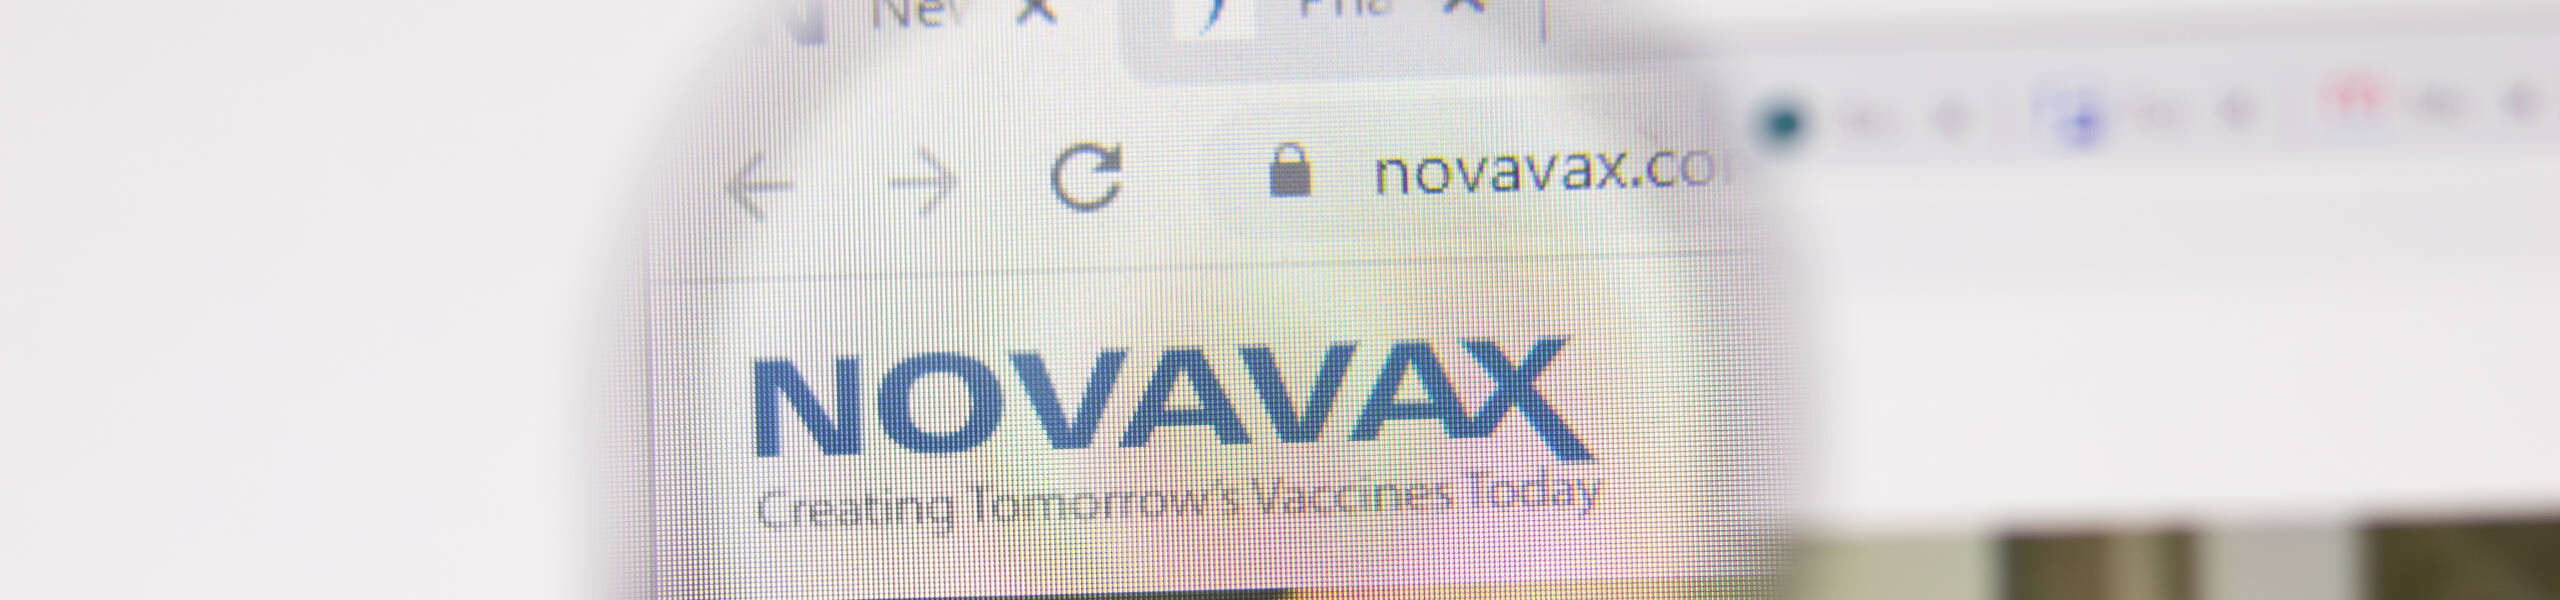 Novavax Sedang Diserang